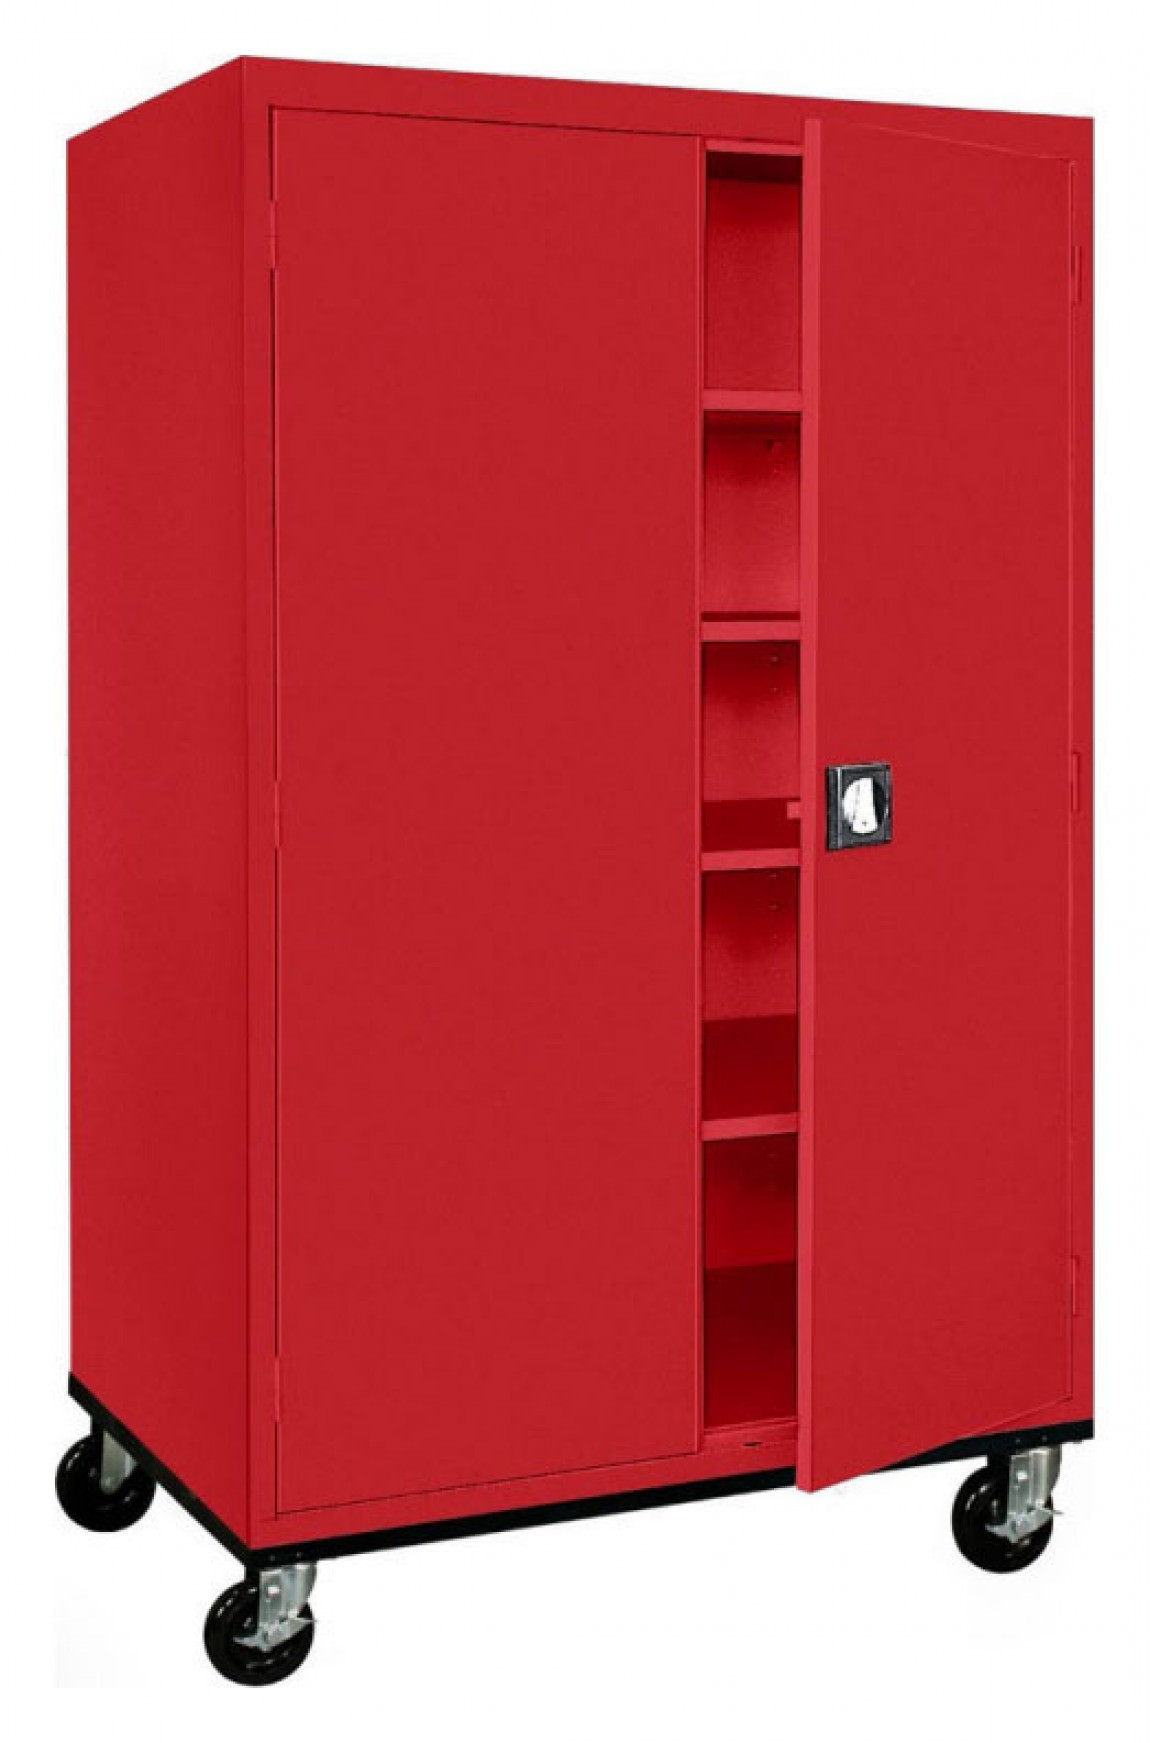 https://madisonliquidators.com/images/p/1150/34341-mobile-storage-cabinet-1.jpg